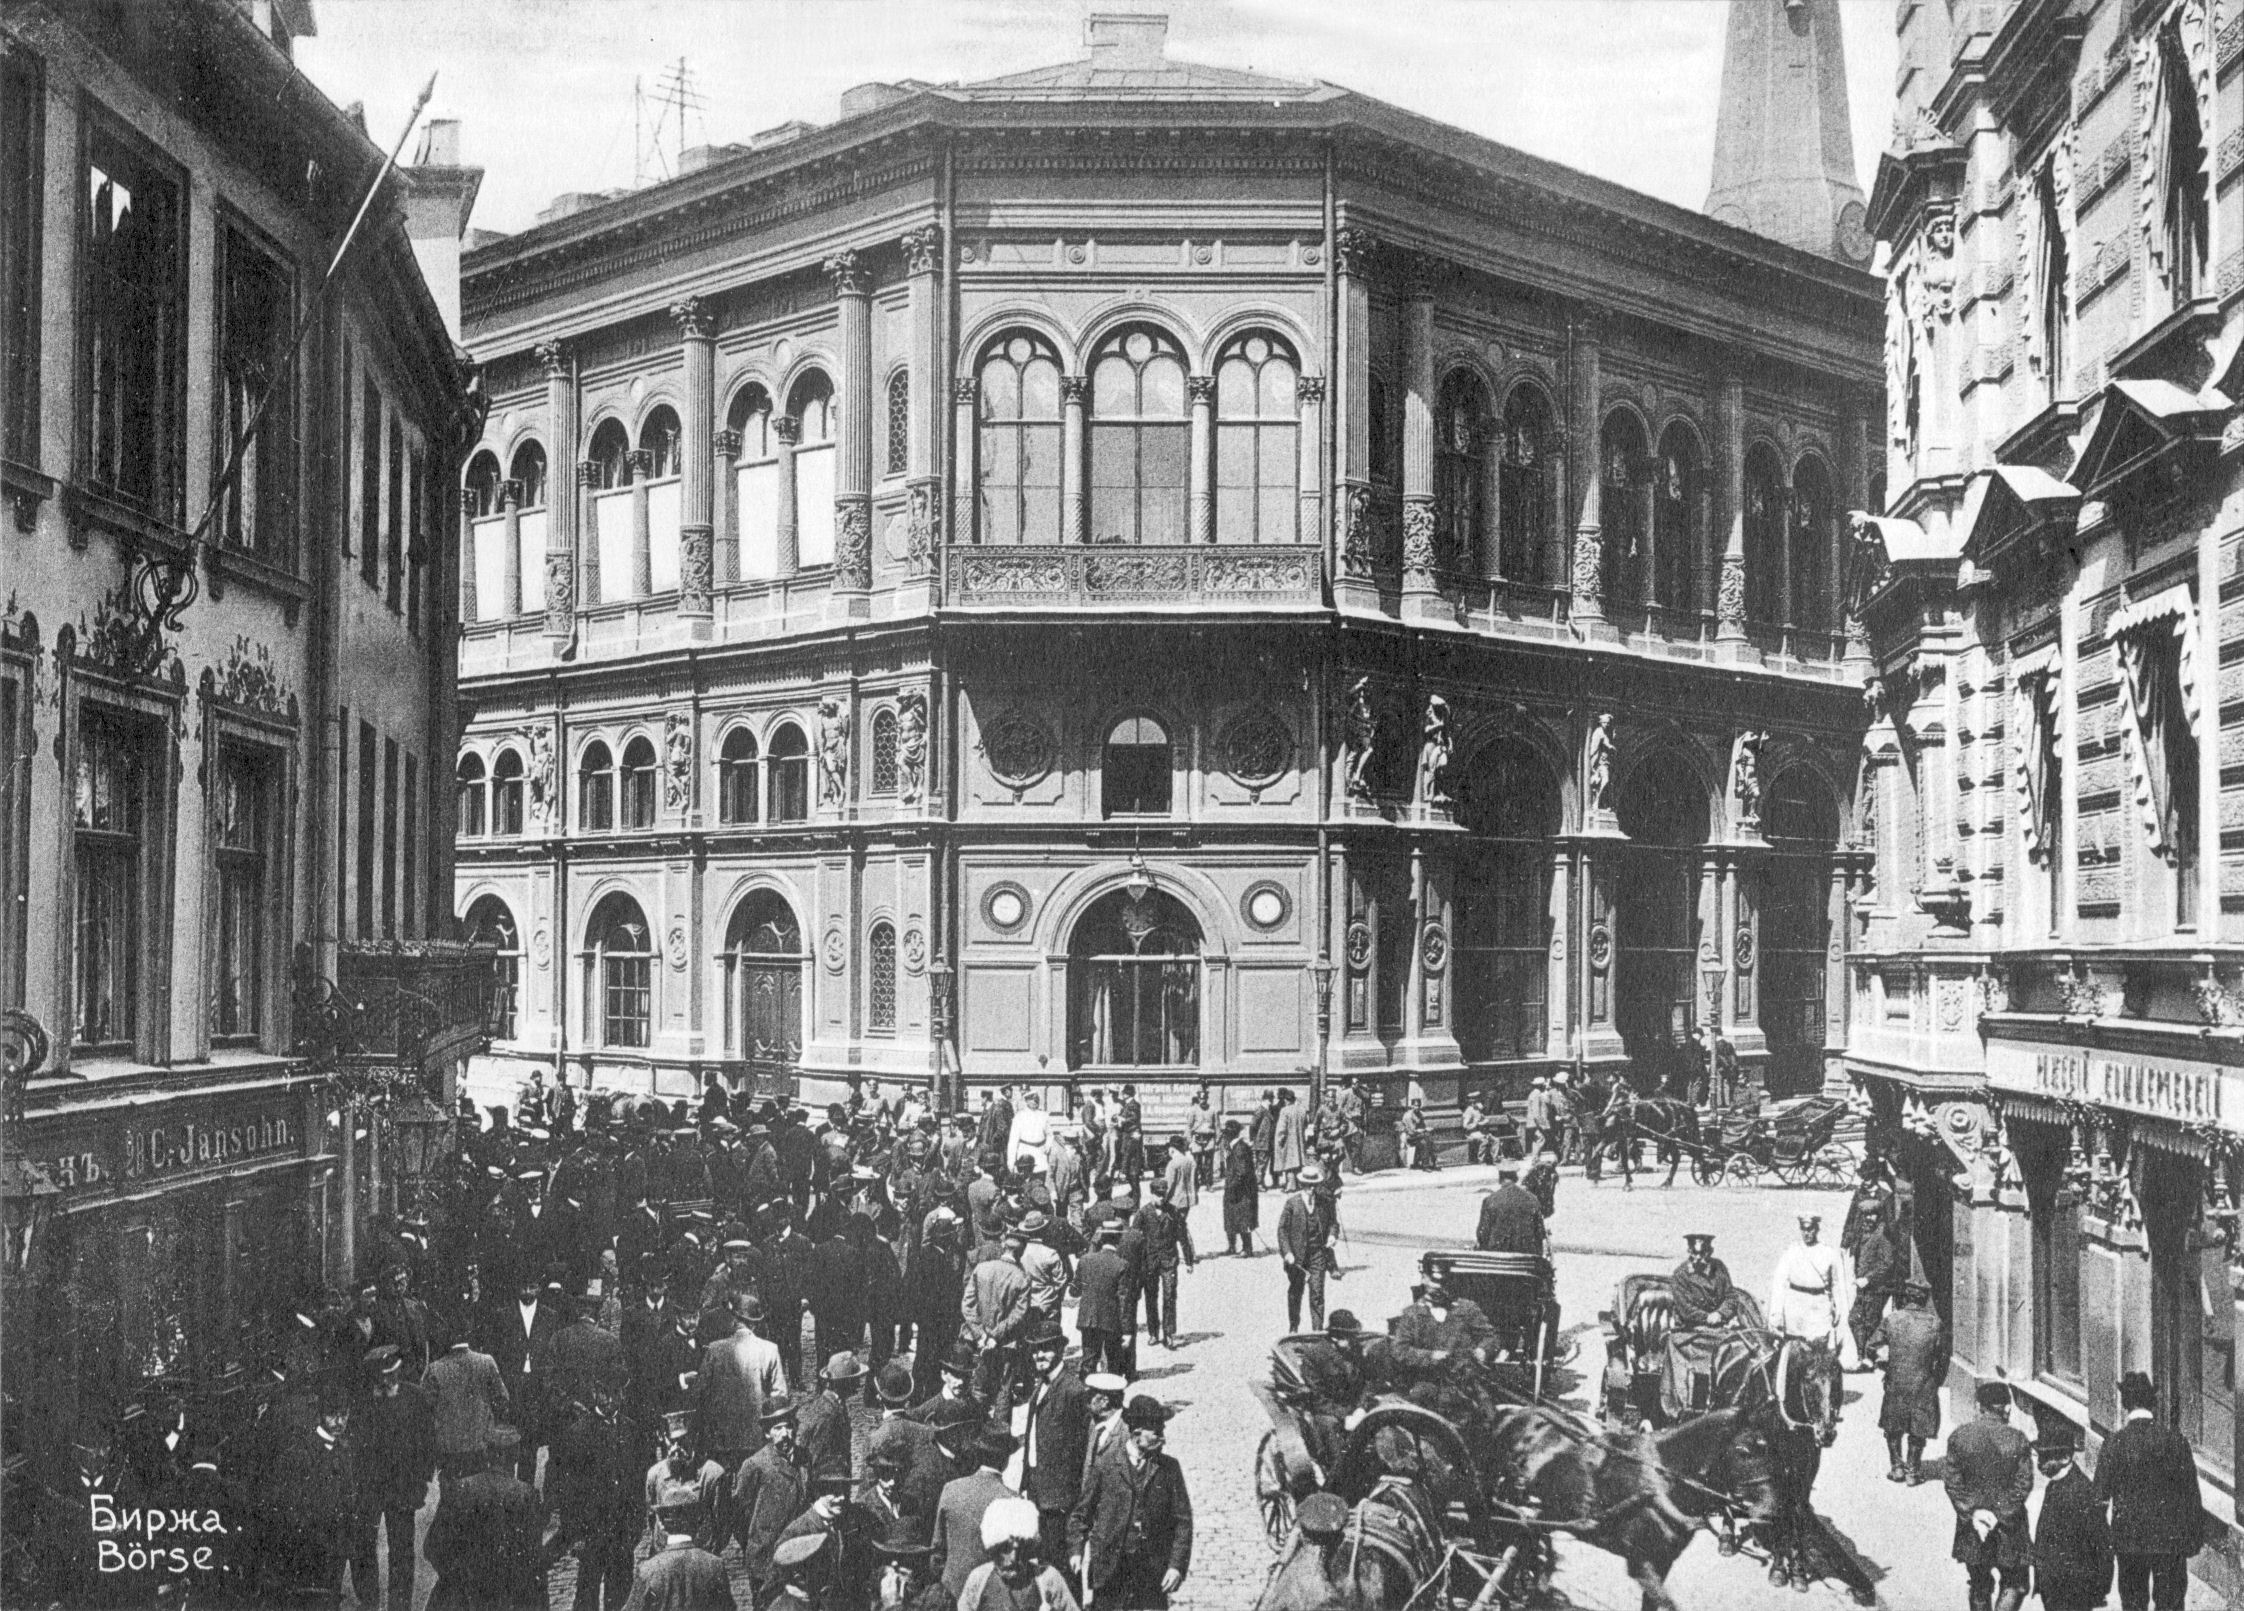 The Riga Bourse